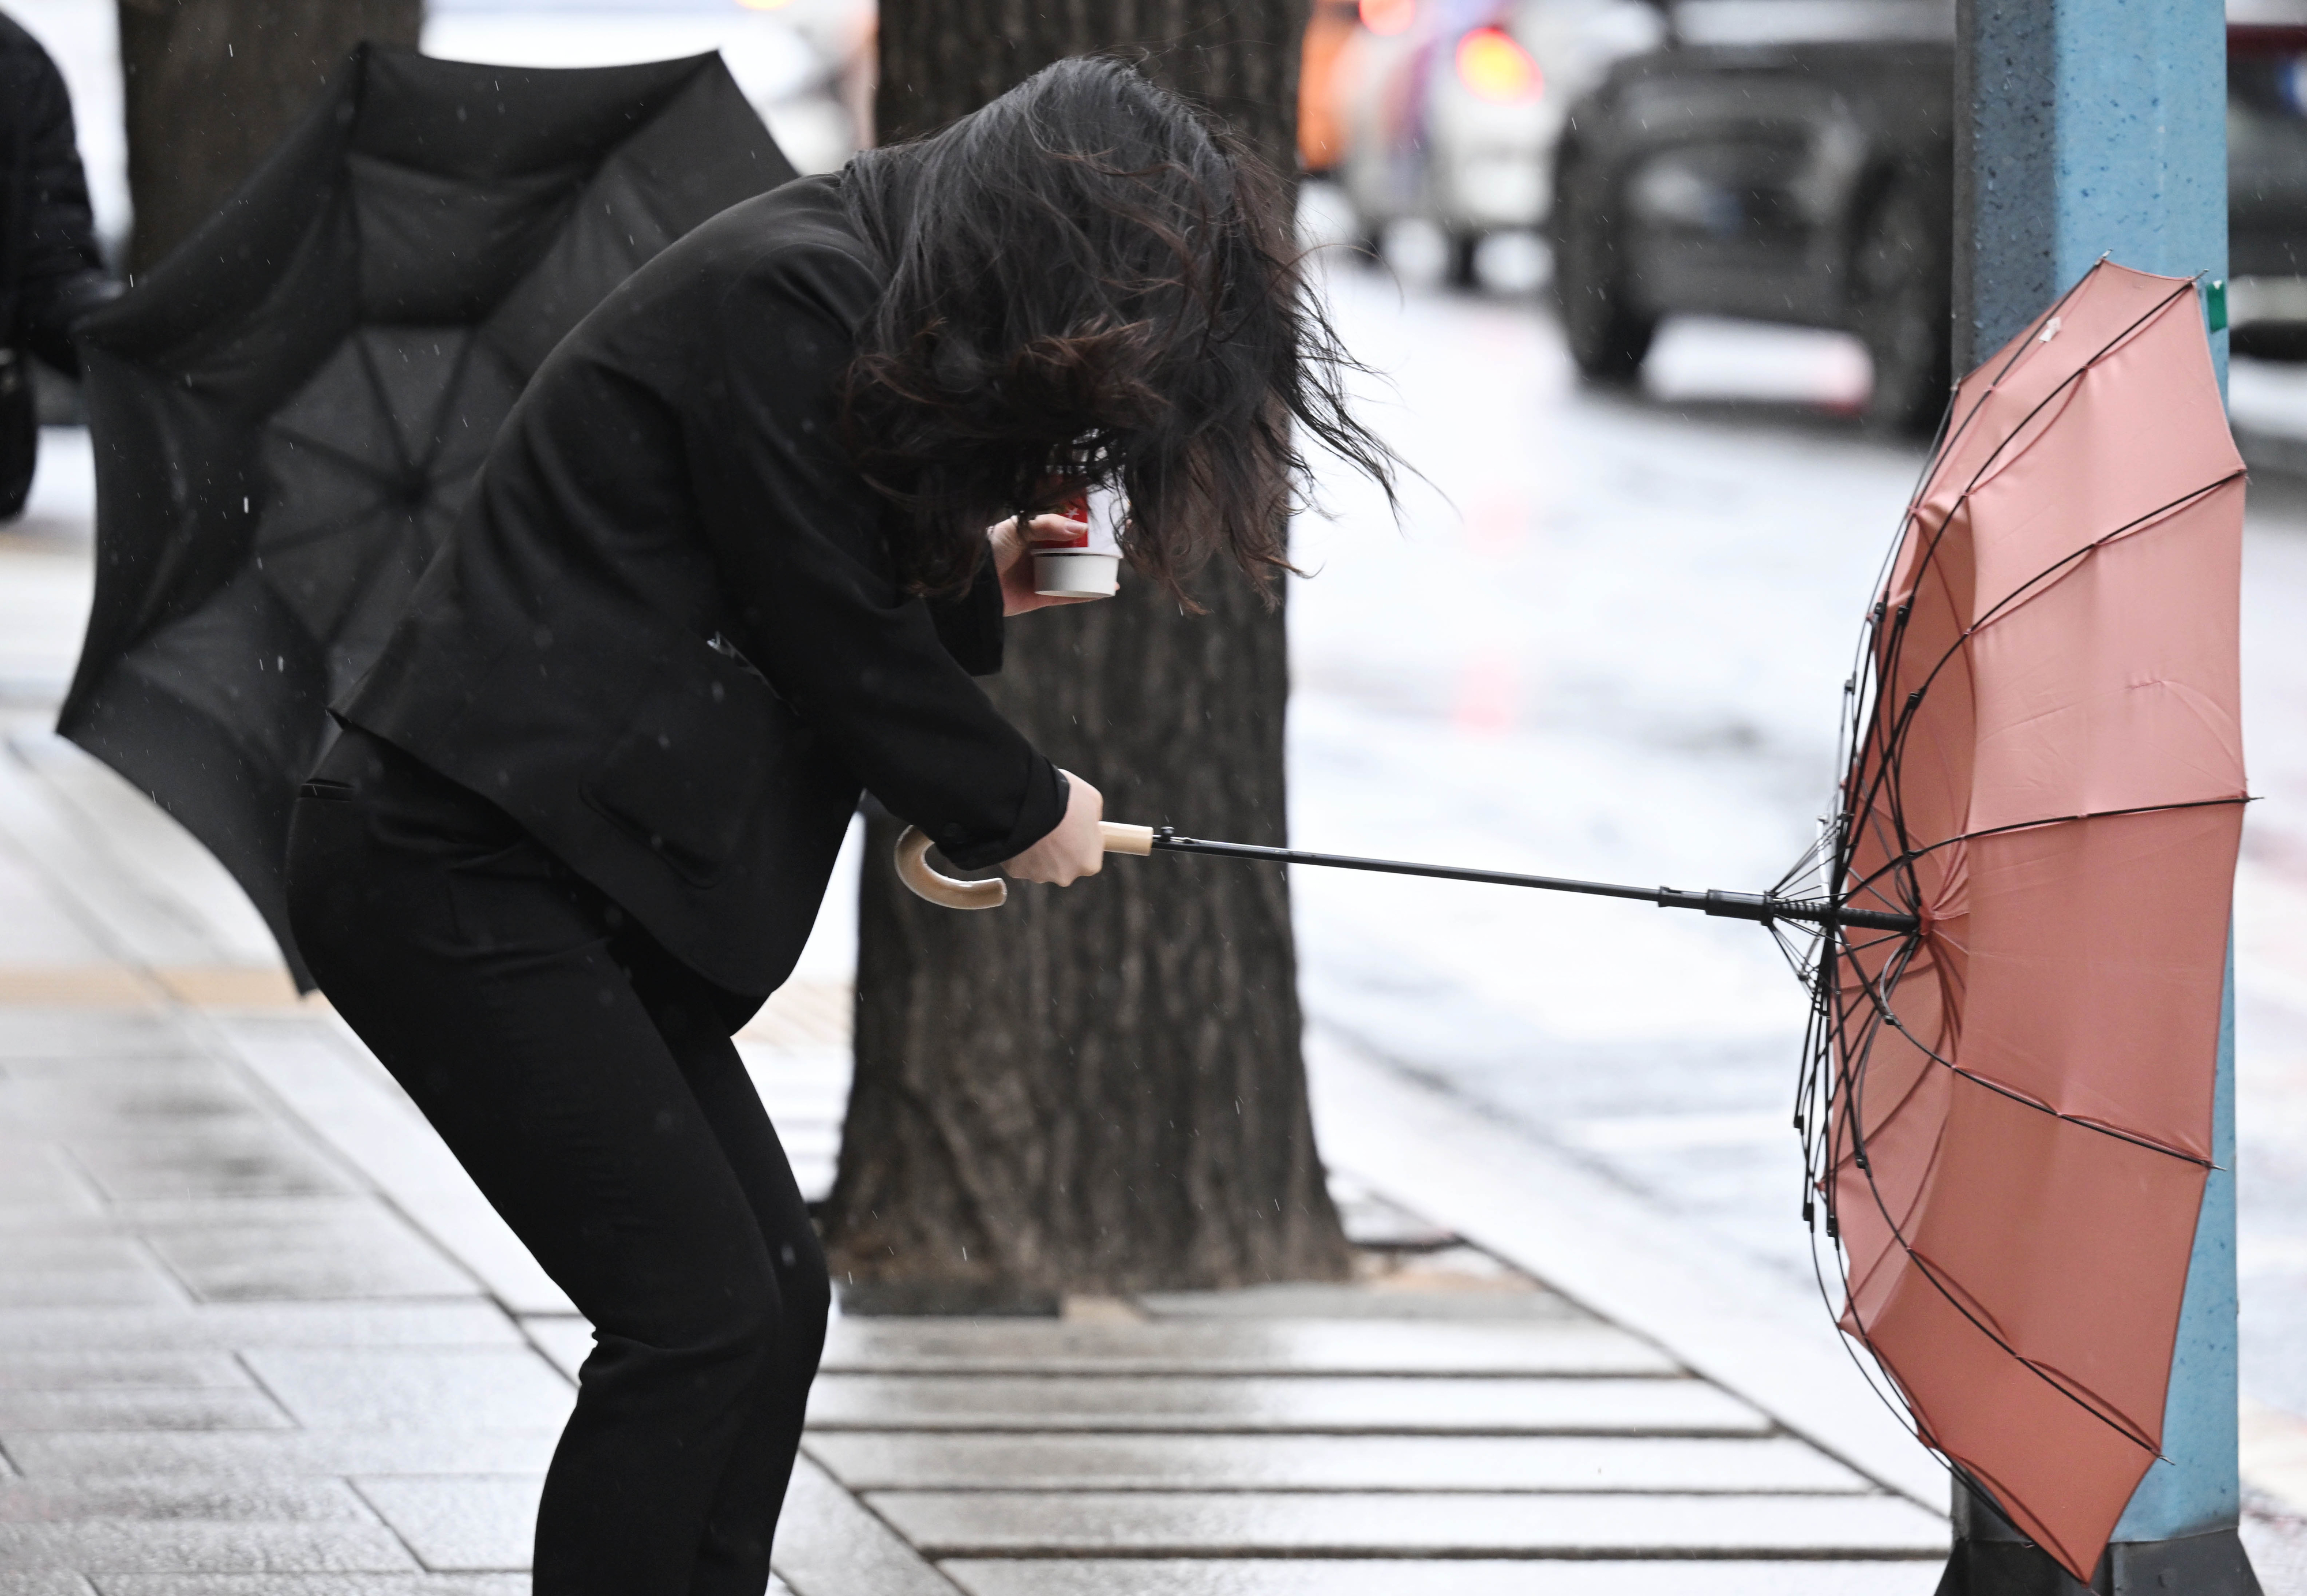 강원도에 사상 처음으로 12월 중 호우특보가 내려지는 등 전국 대부분 지역에 비가 내린 11일 서울 종로구 한 거리에서 시민들의 우산이 비바람에 뒤집히고 있다. 2023.12.11 홍윤기 기자